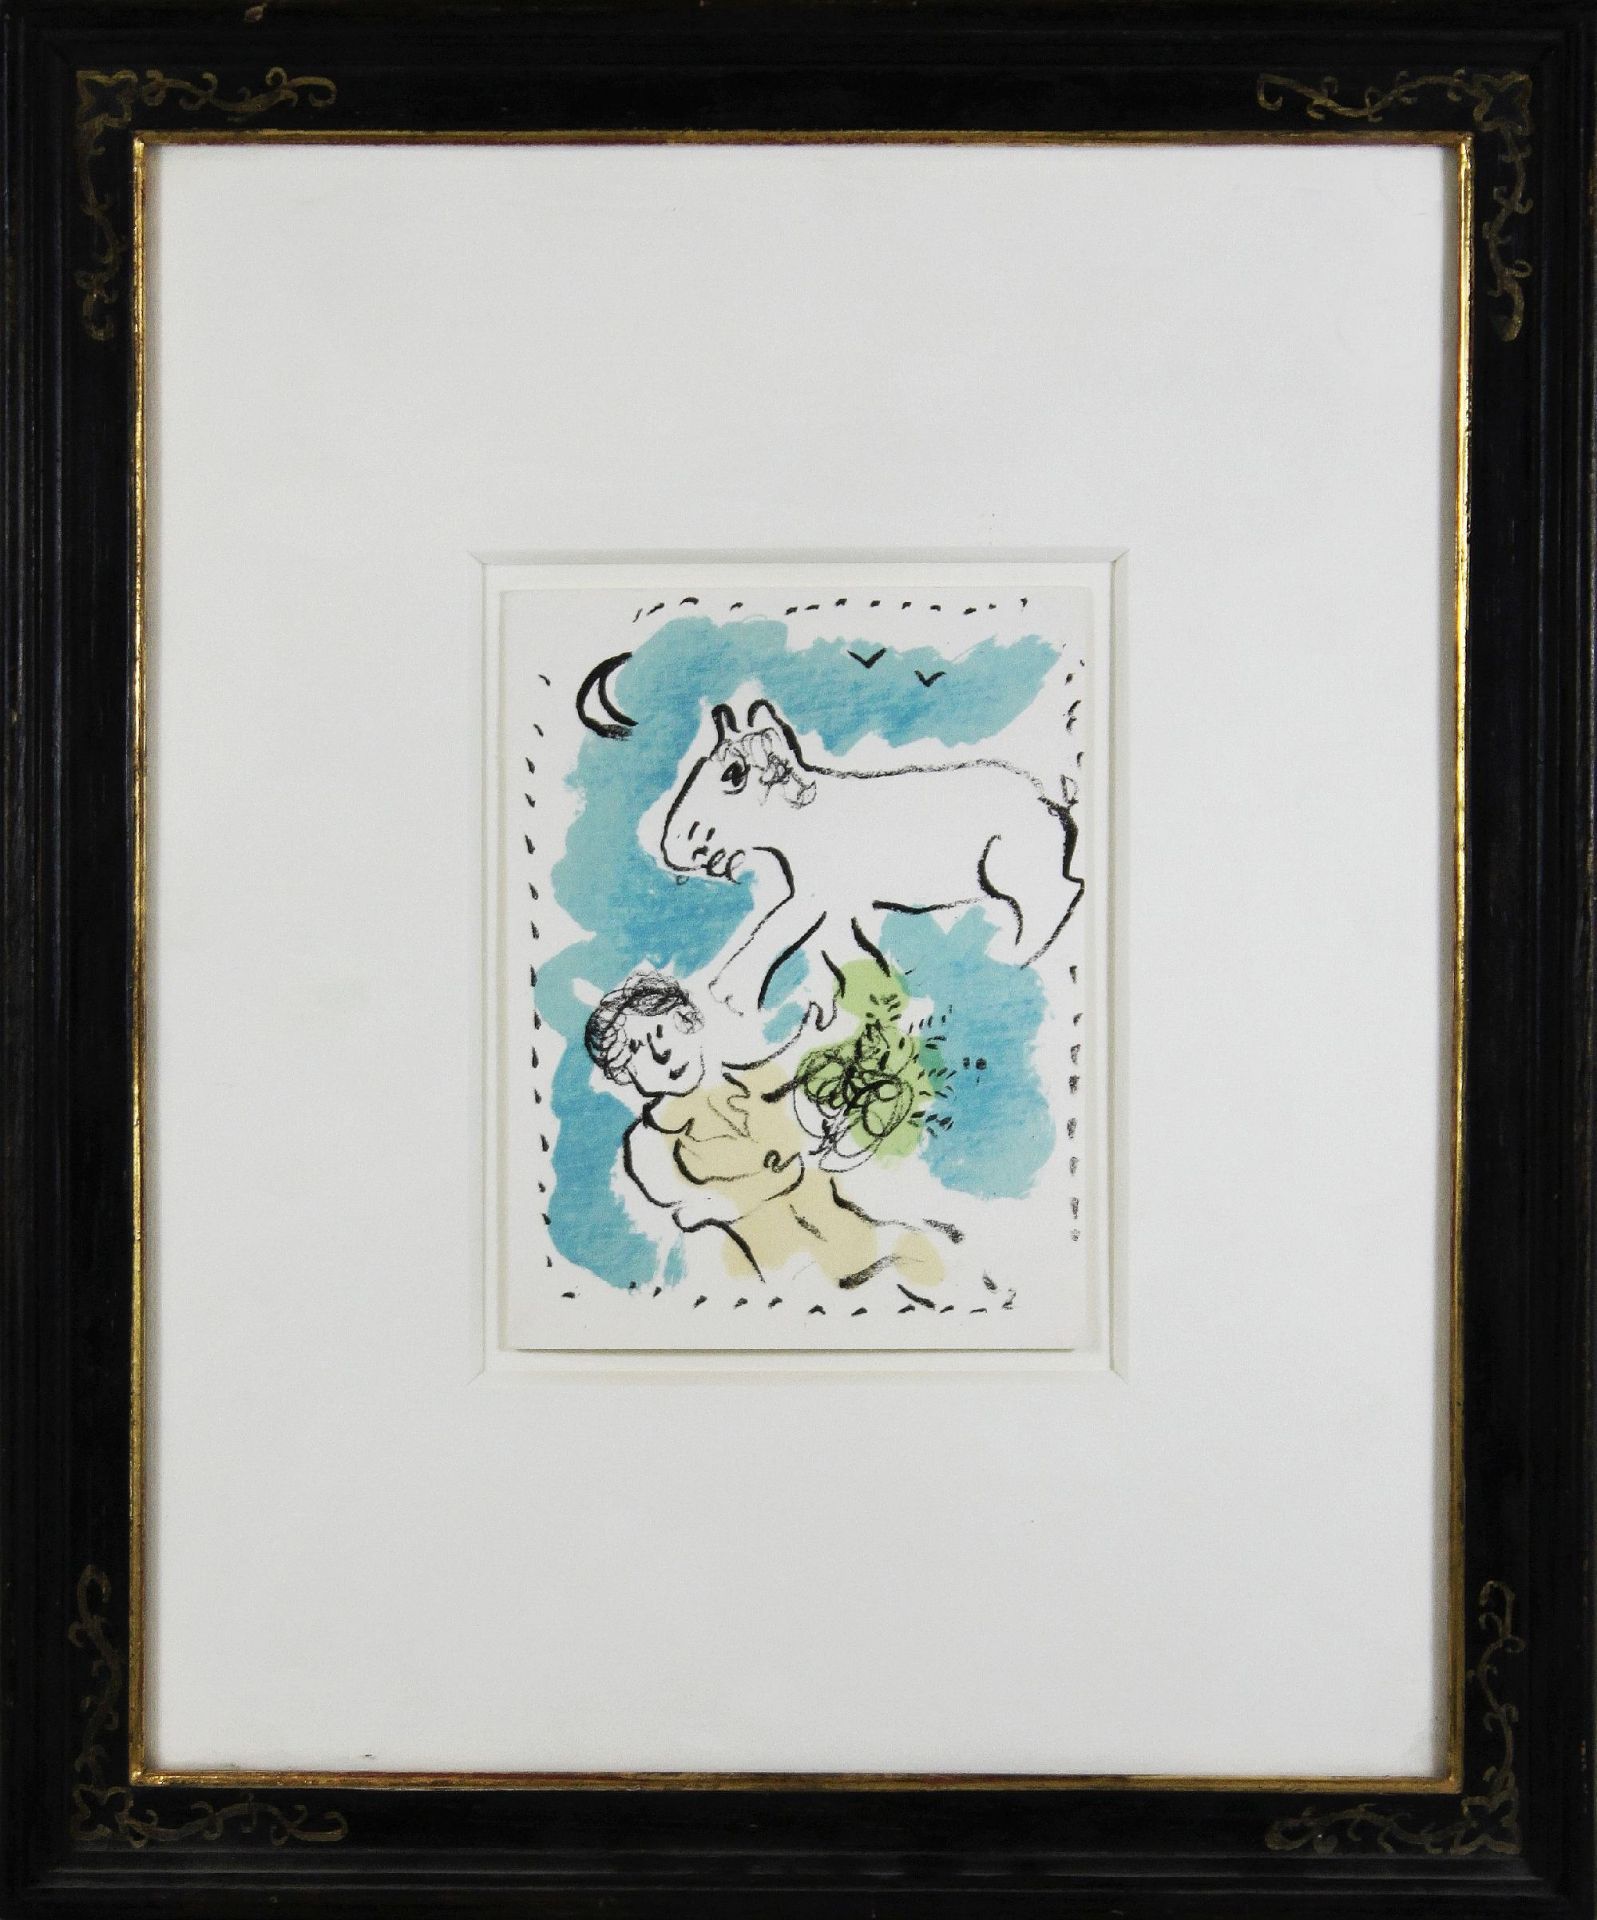 Marc Chagall (russisch-französisch, 1887-1985), Glückwunschkarte, ,Cartes de Voeux?, 1979, Farbli - Bild 2 aus 2